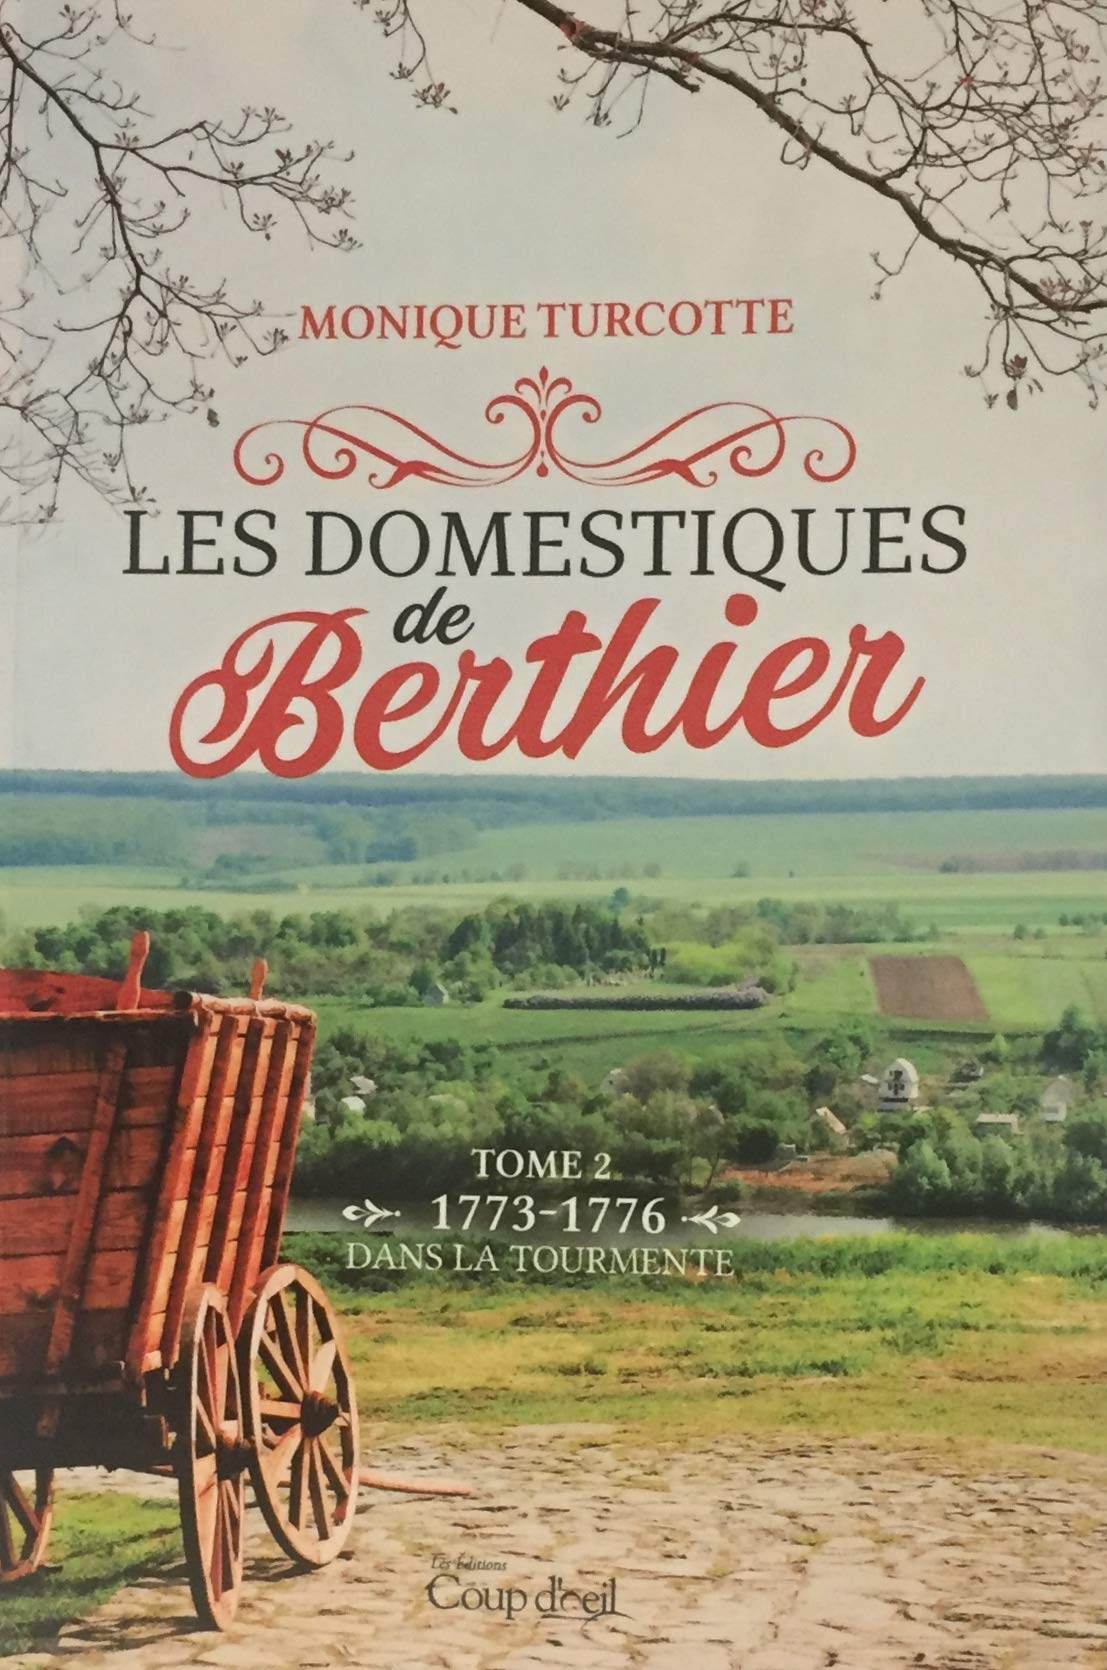 Livre ISBN 2897683309 Les domestique de Berthier # 2 : Dans la tourmente (1773-1776) (Monique Turcotte)